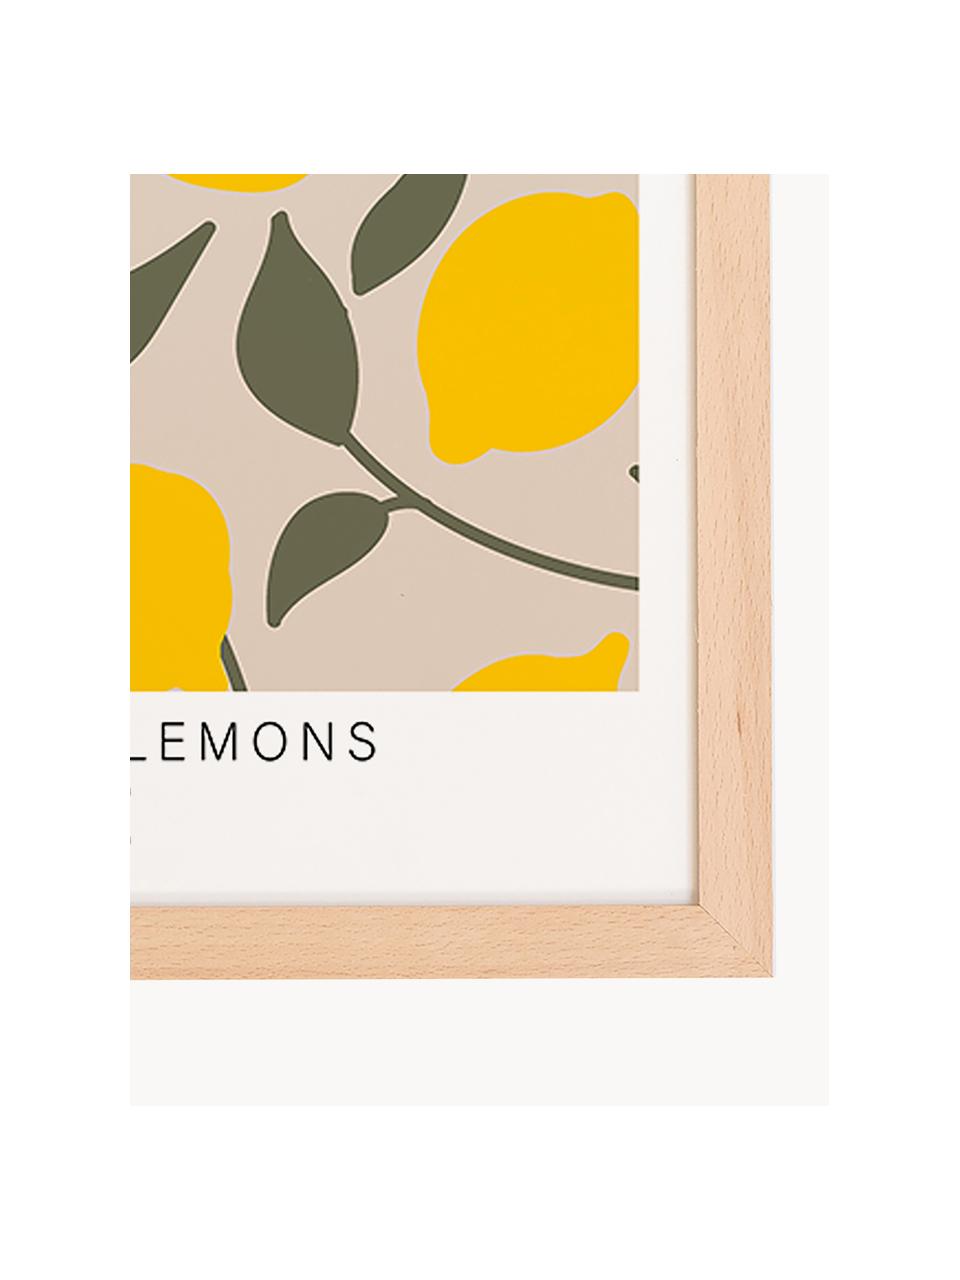 Impression numérique encadrée Make Lemonade, Bois clair, jaune soleil, vert olive, larg. 33 x haut. 43 cm